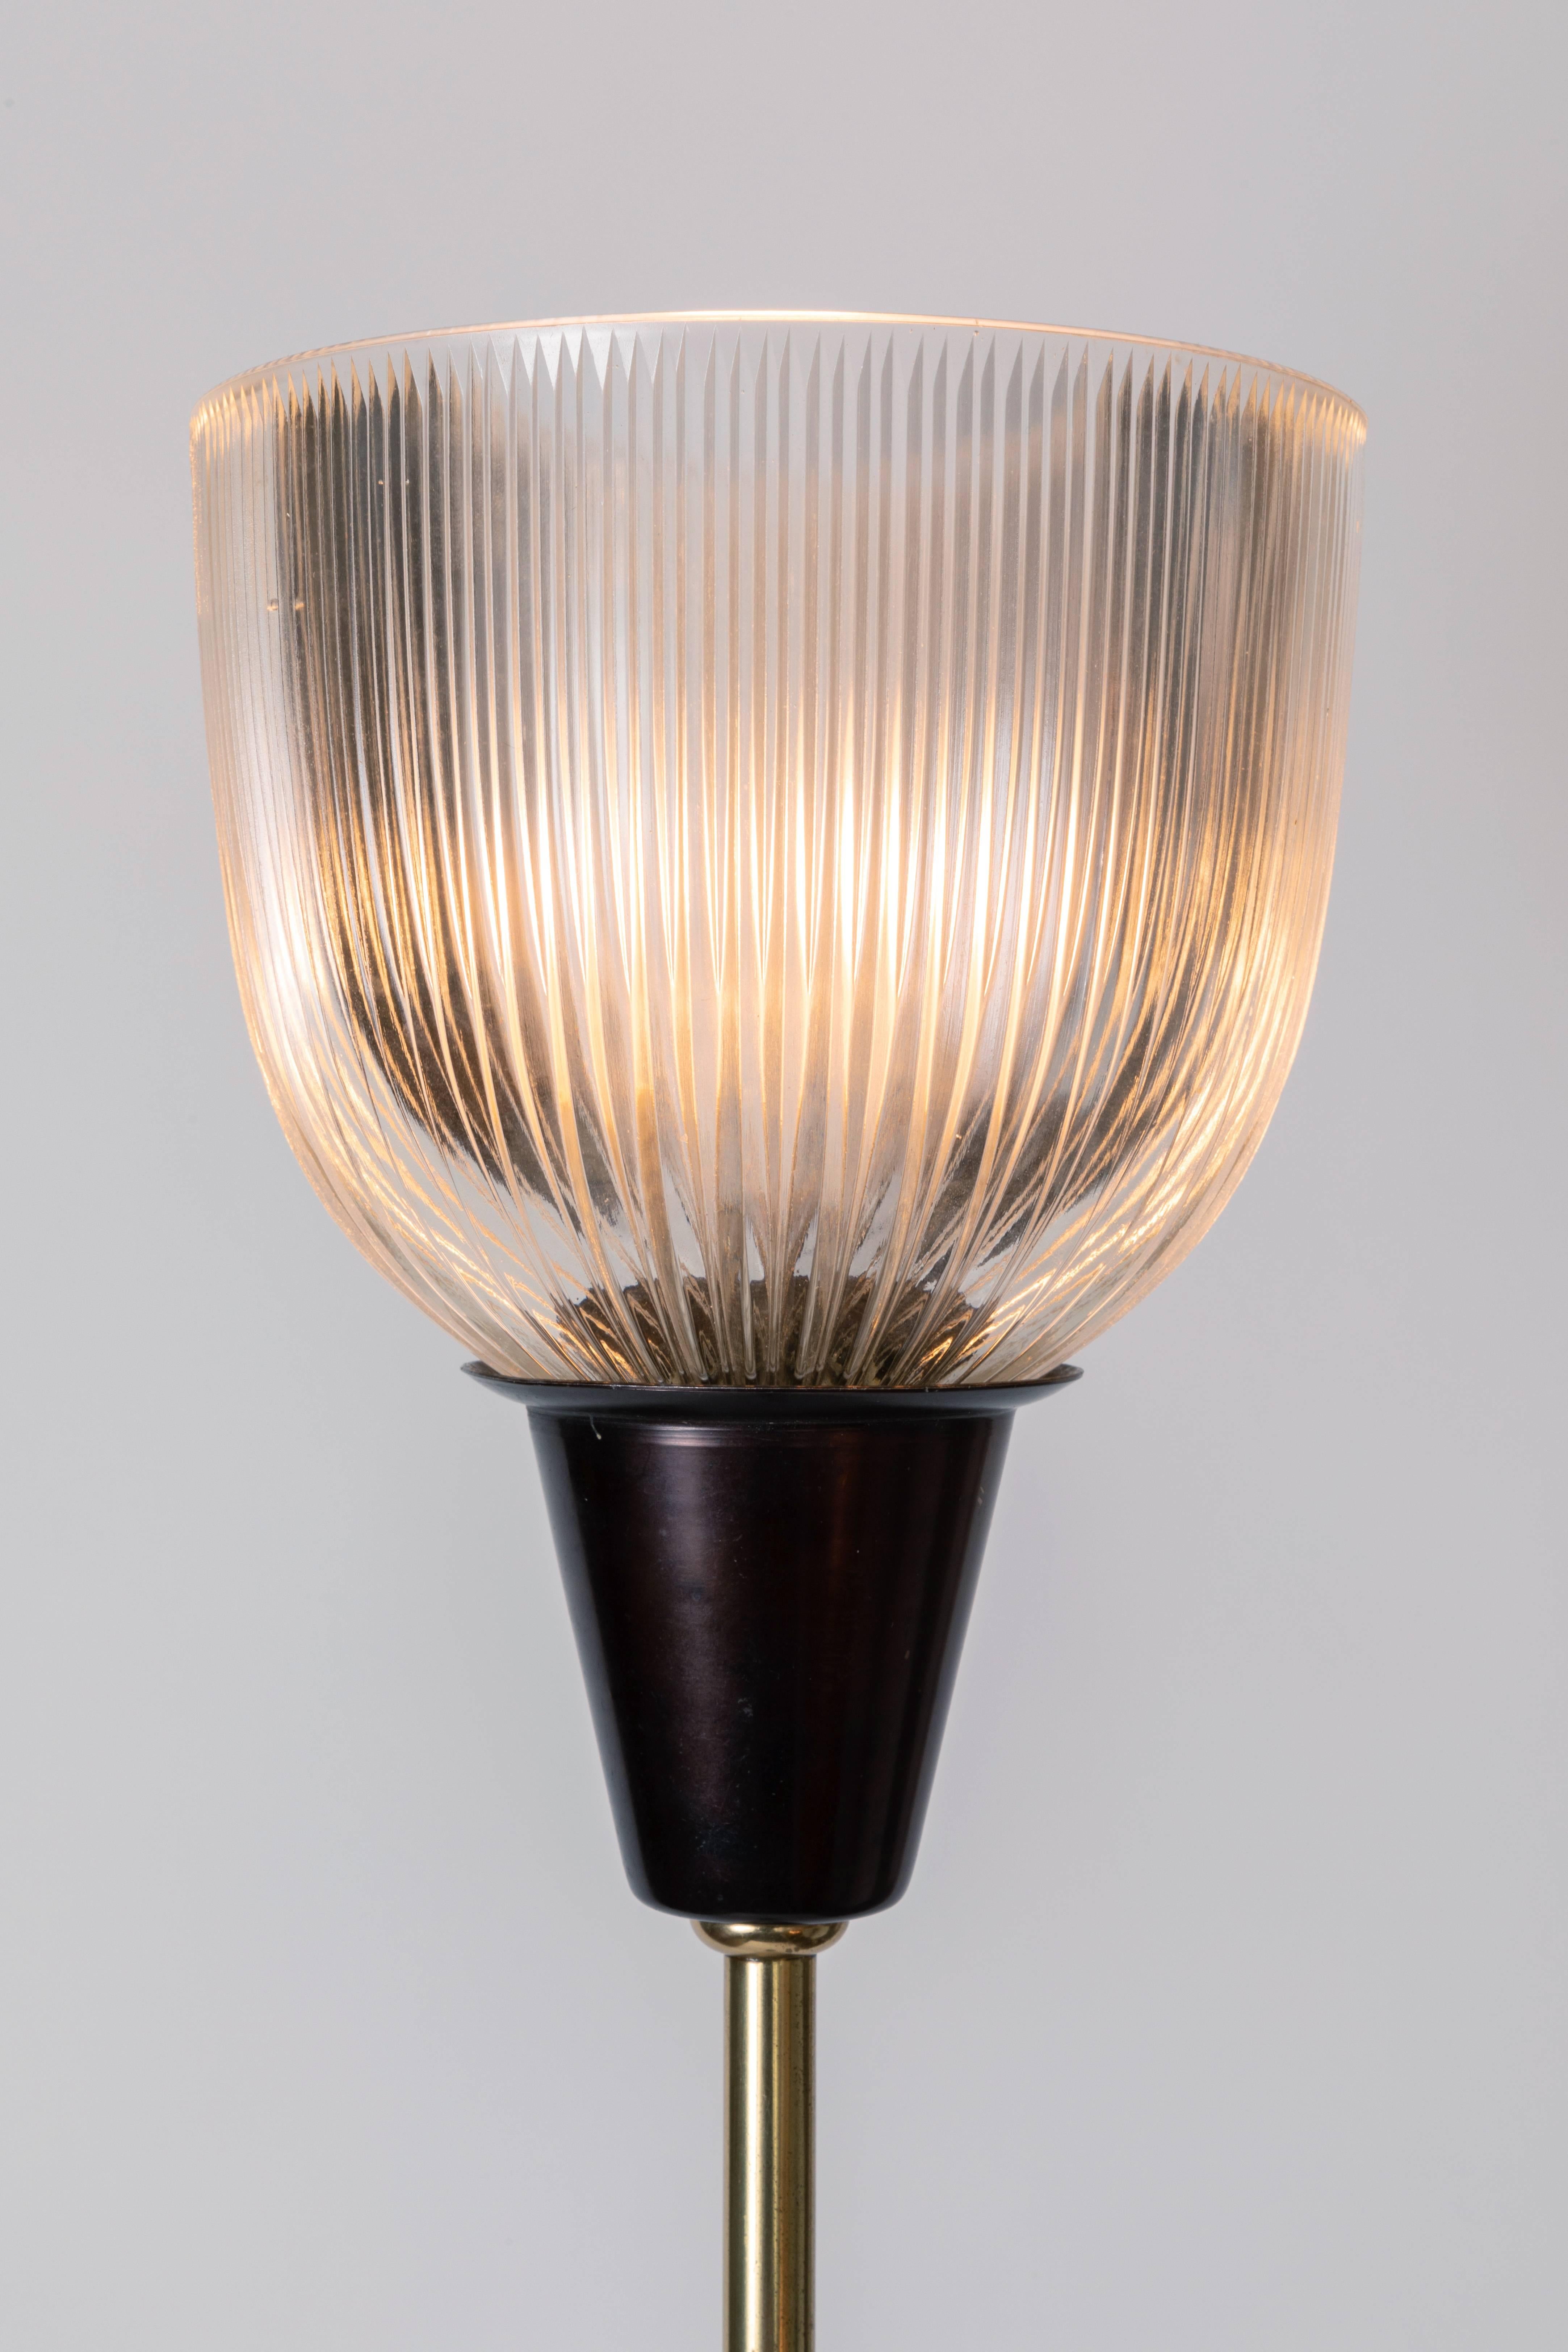 Italian 1950s Ignazio Gardella LT6 Floor Lamp for Azucena